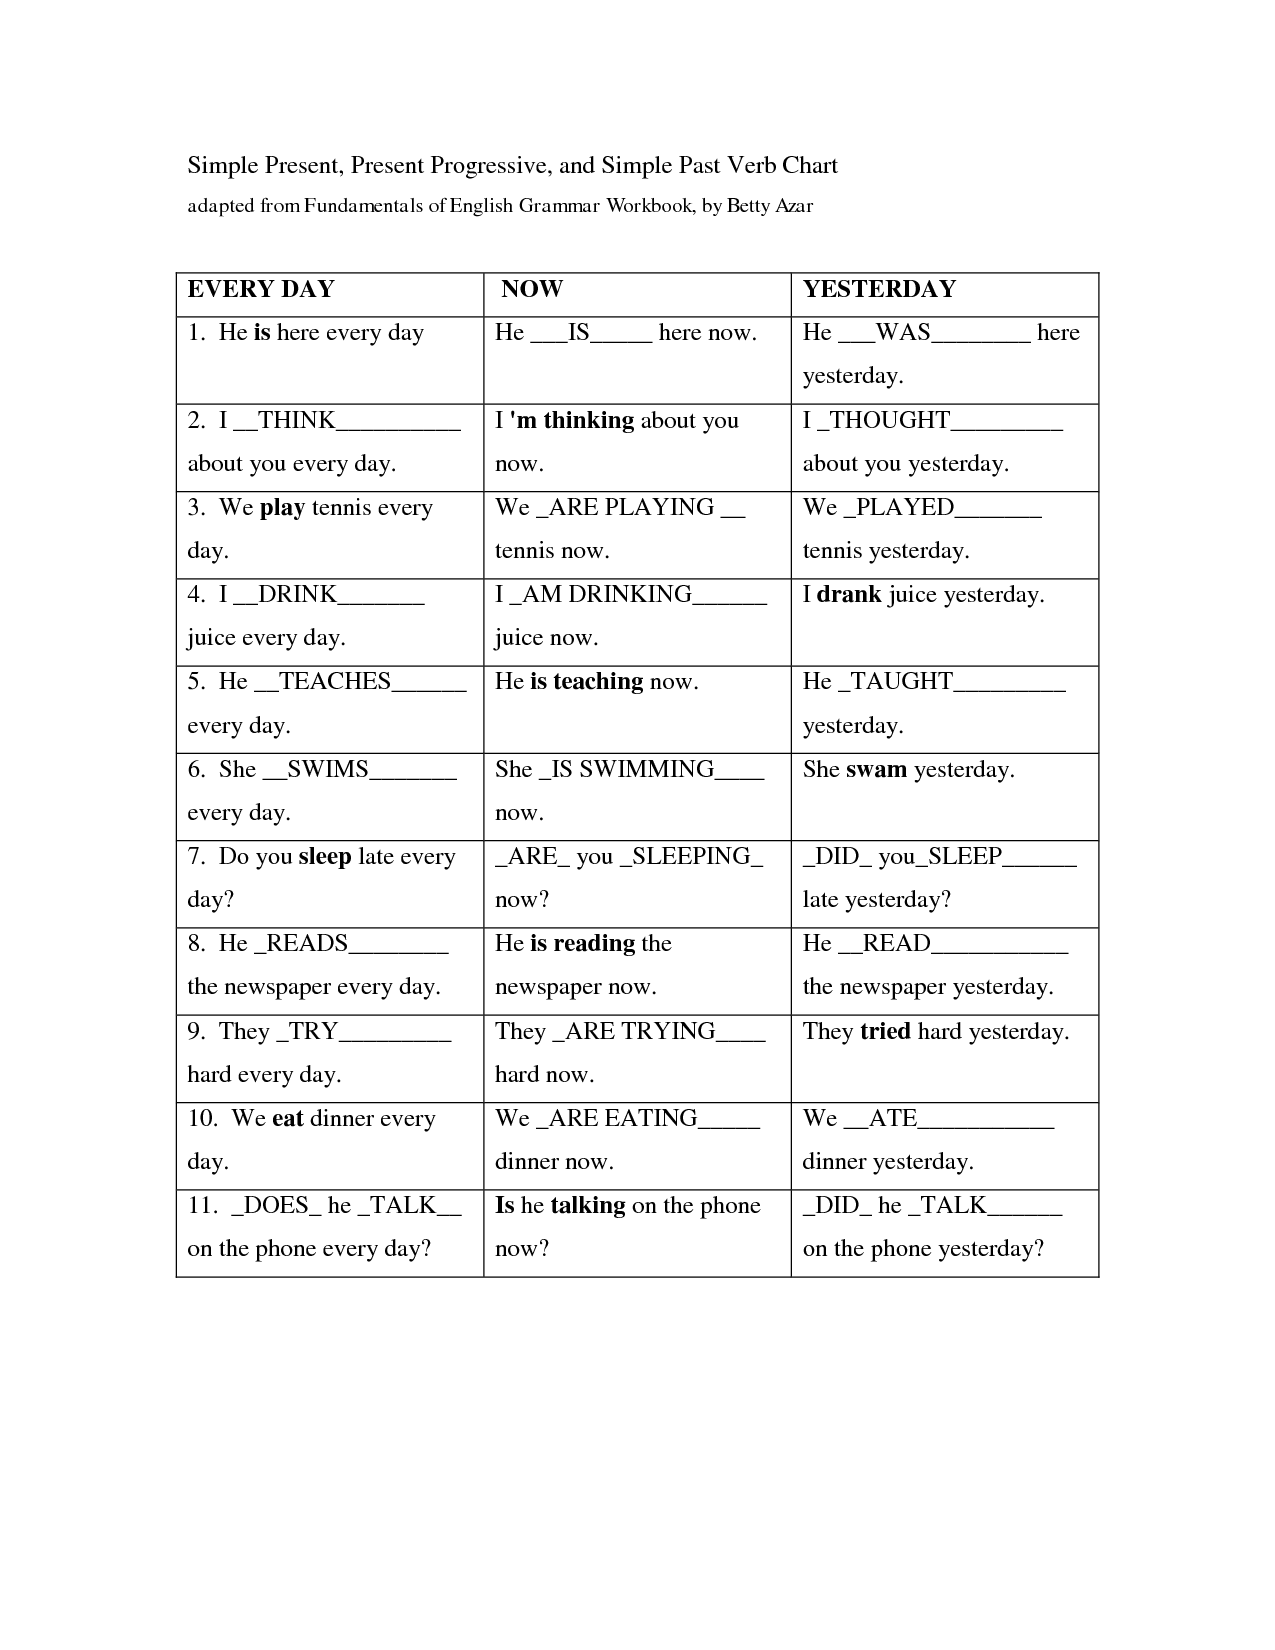 stative-verb-exercises-verb-worksheets-grammar-exercises-reading-comprehension-worksheets